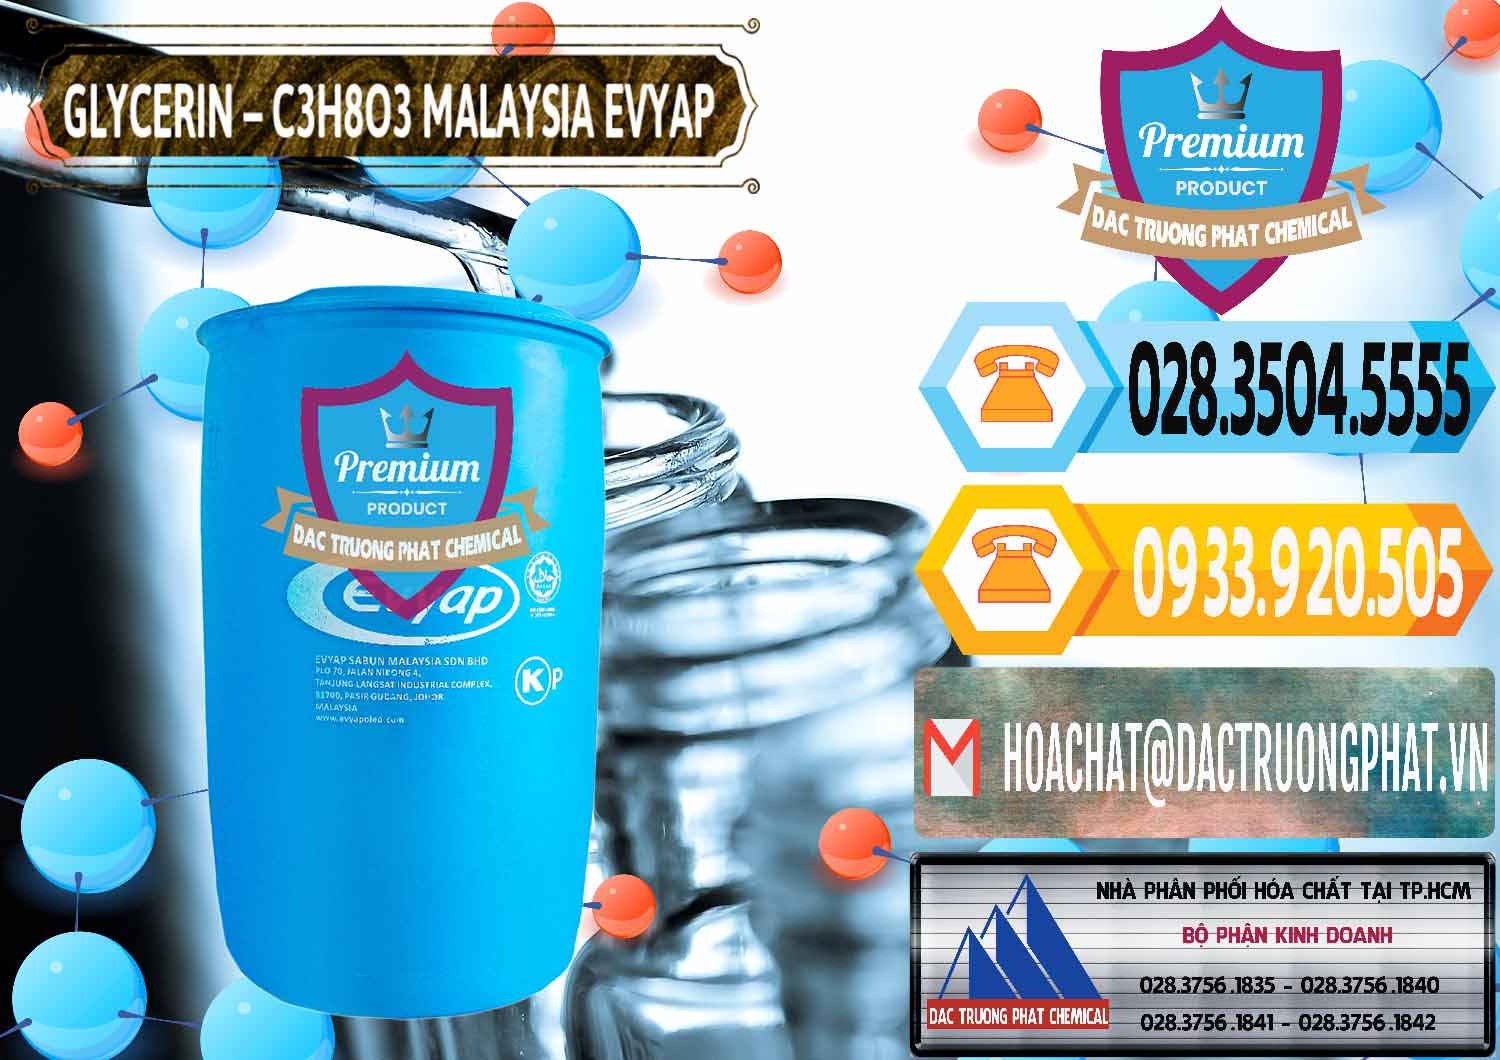 Công ty chuyên bán và phân phối Glycerin – C3H8O3 Malaysia Evyap - 0066 - Nơi chuyên cung cấp ( nhập khẩu ) hóa chất tại TP.HCM - hoachattayrua.net